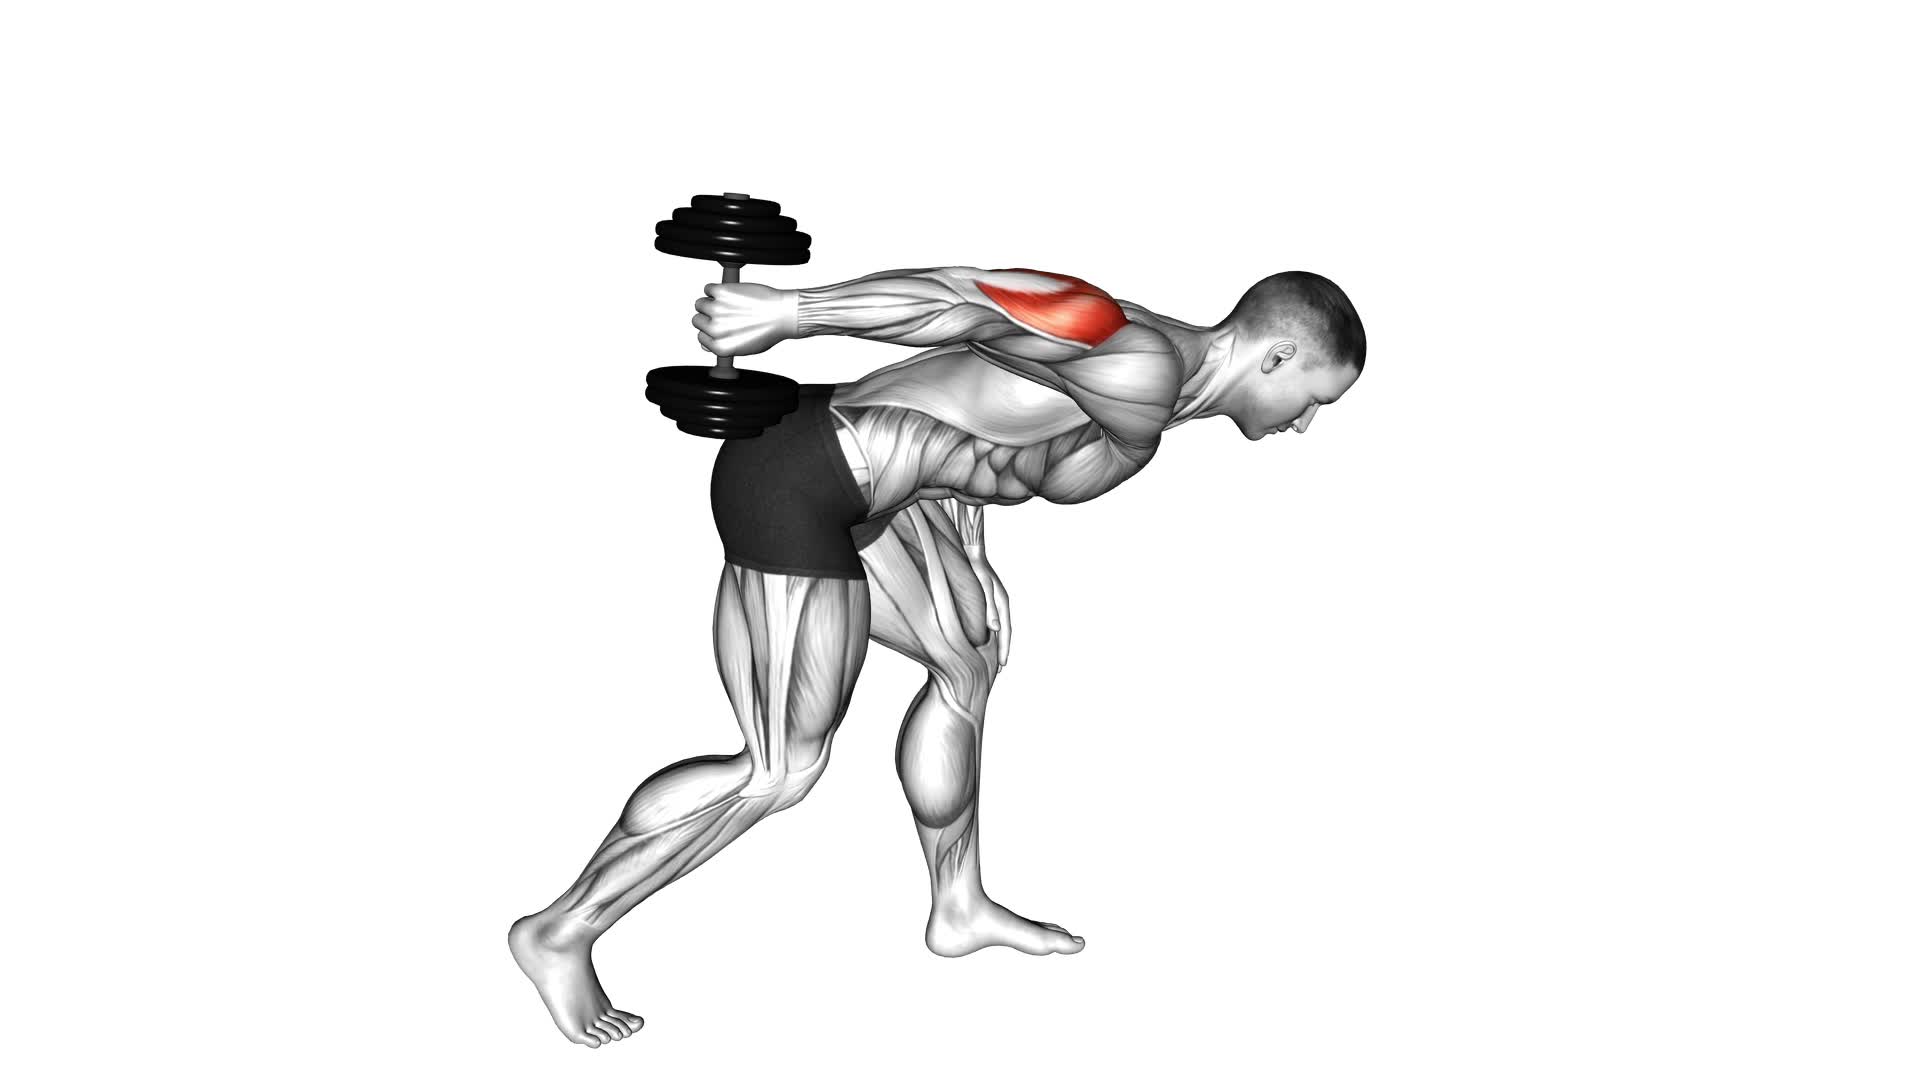 Dumbbell One Arm Kickback - Video Exercise Guide & Tips